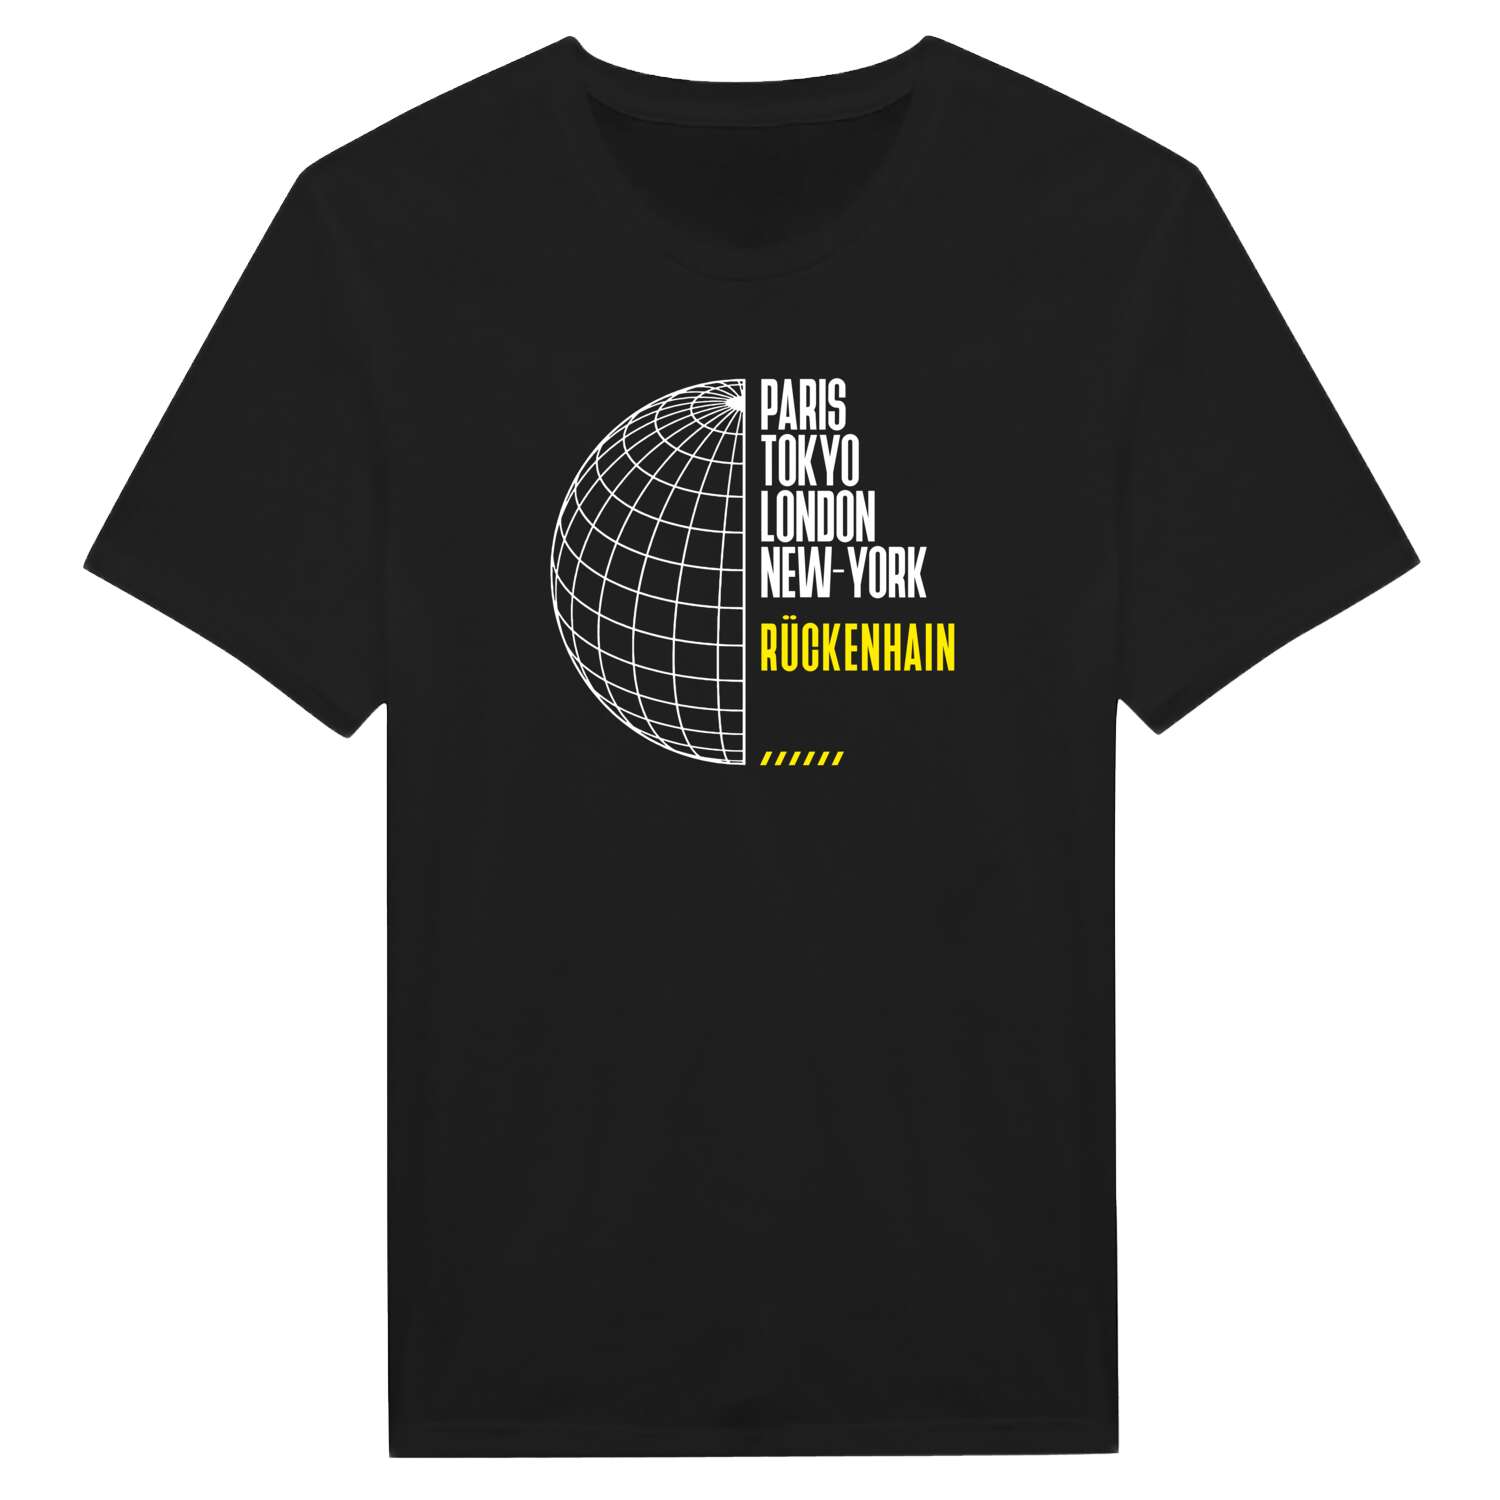 Rückenhain T-Shirt »Paris Tokyo London«